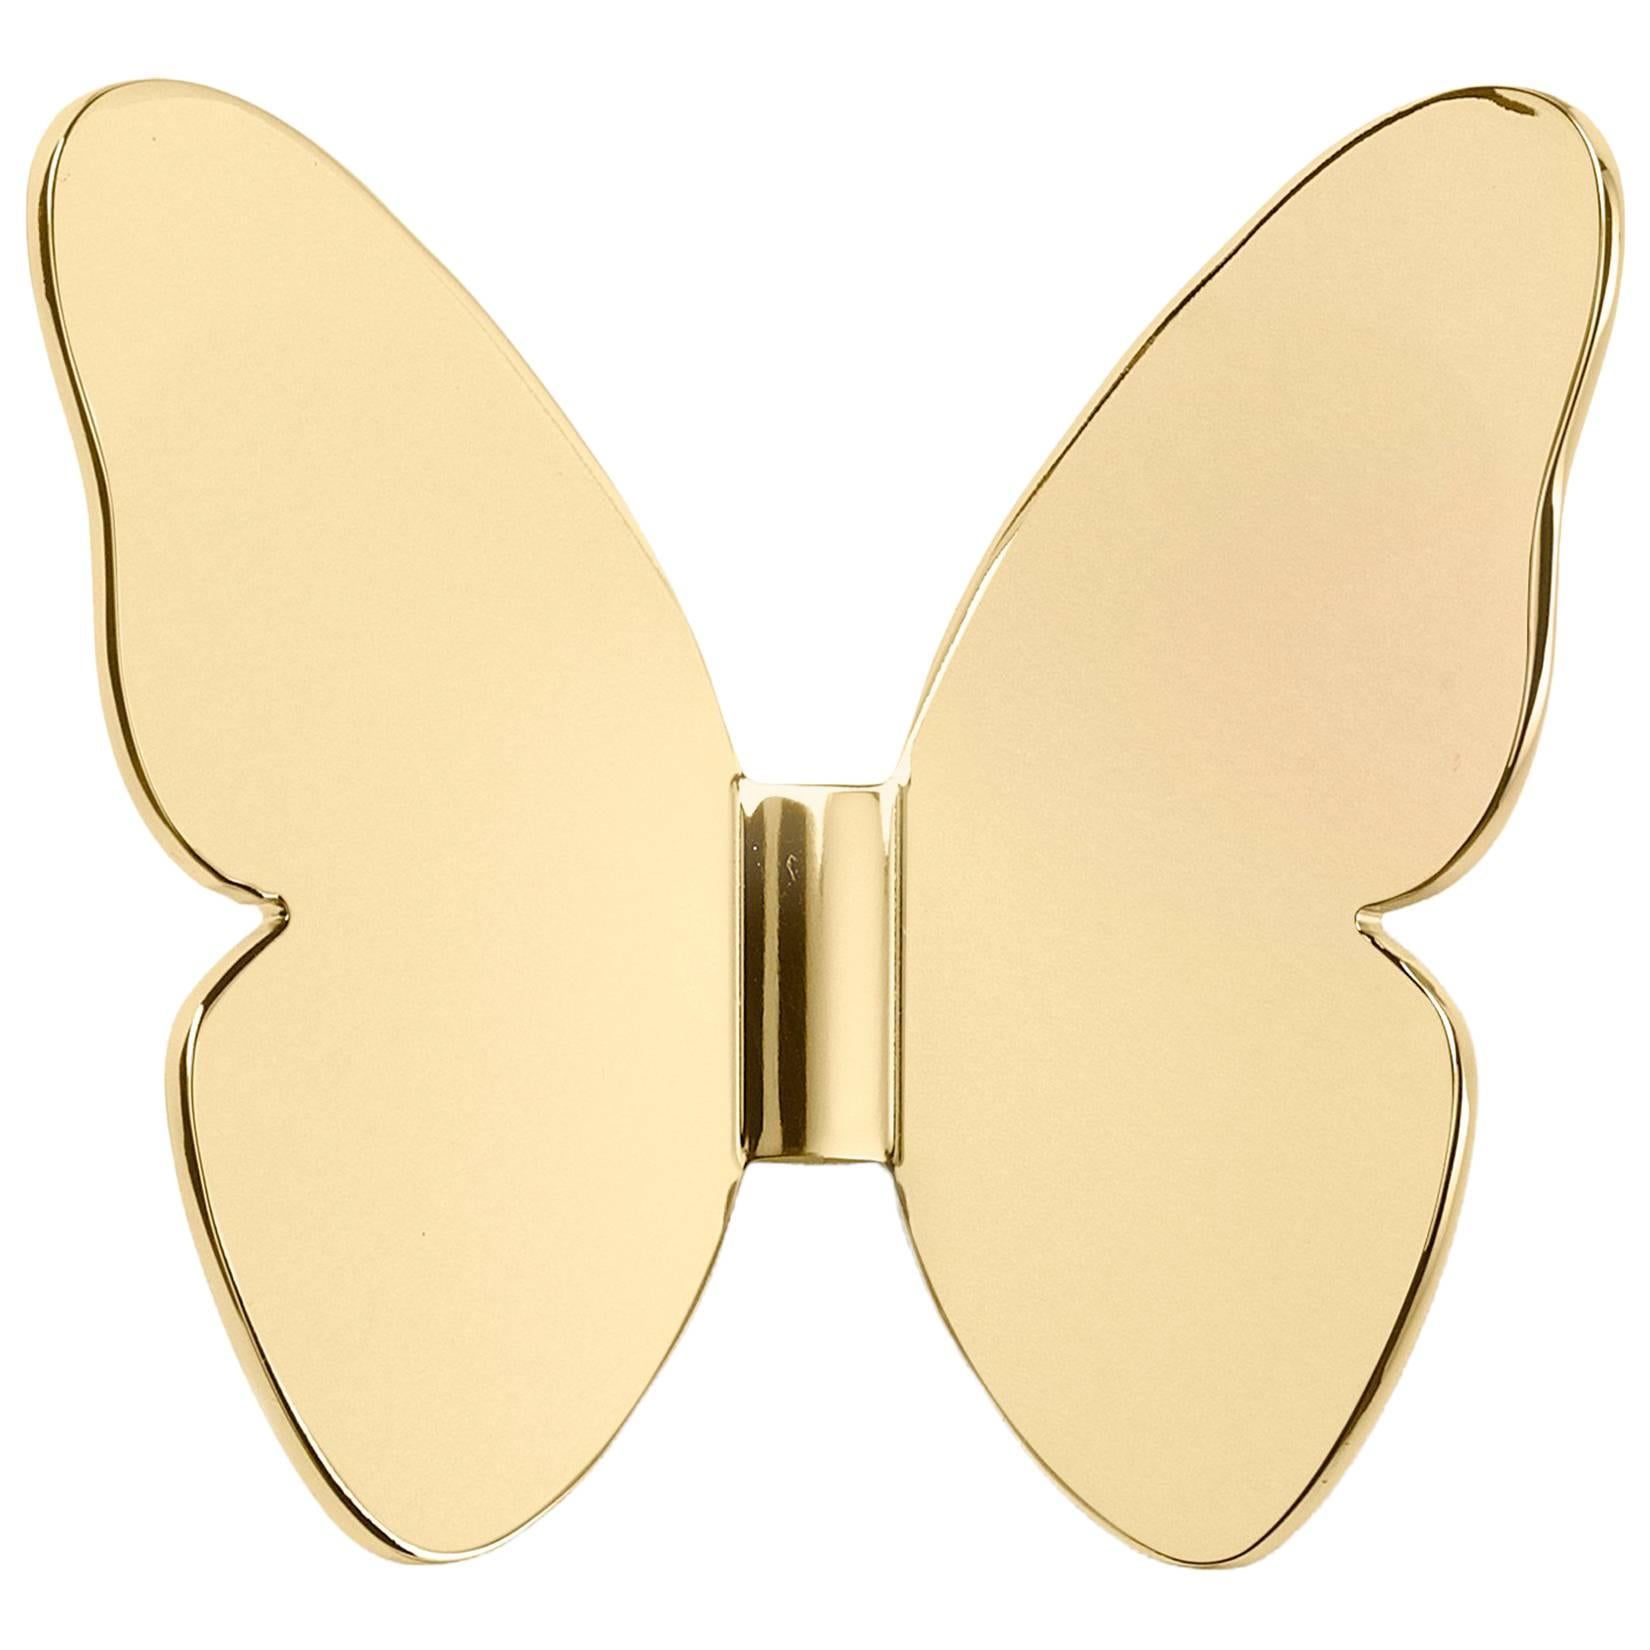 Ghidini 1961 Single Butterfly Hook in Polished Brass For Sale